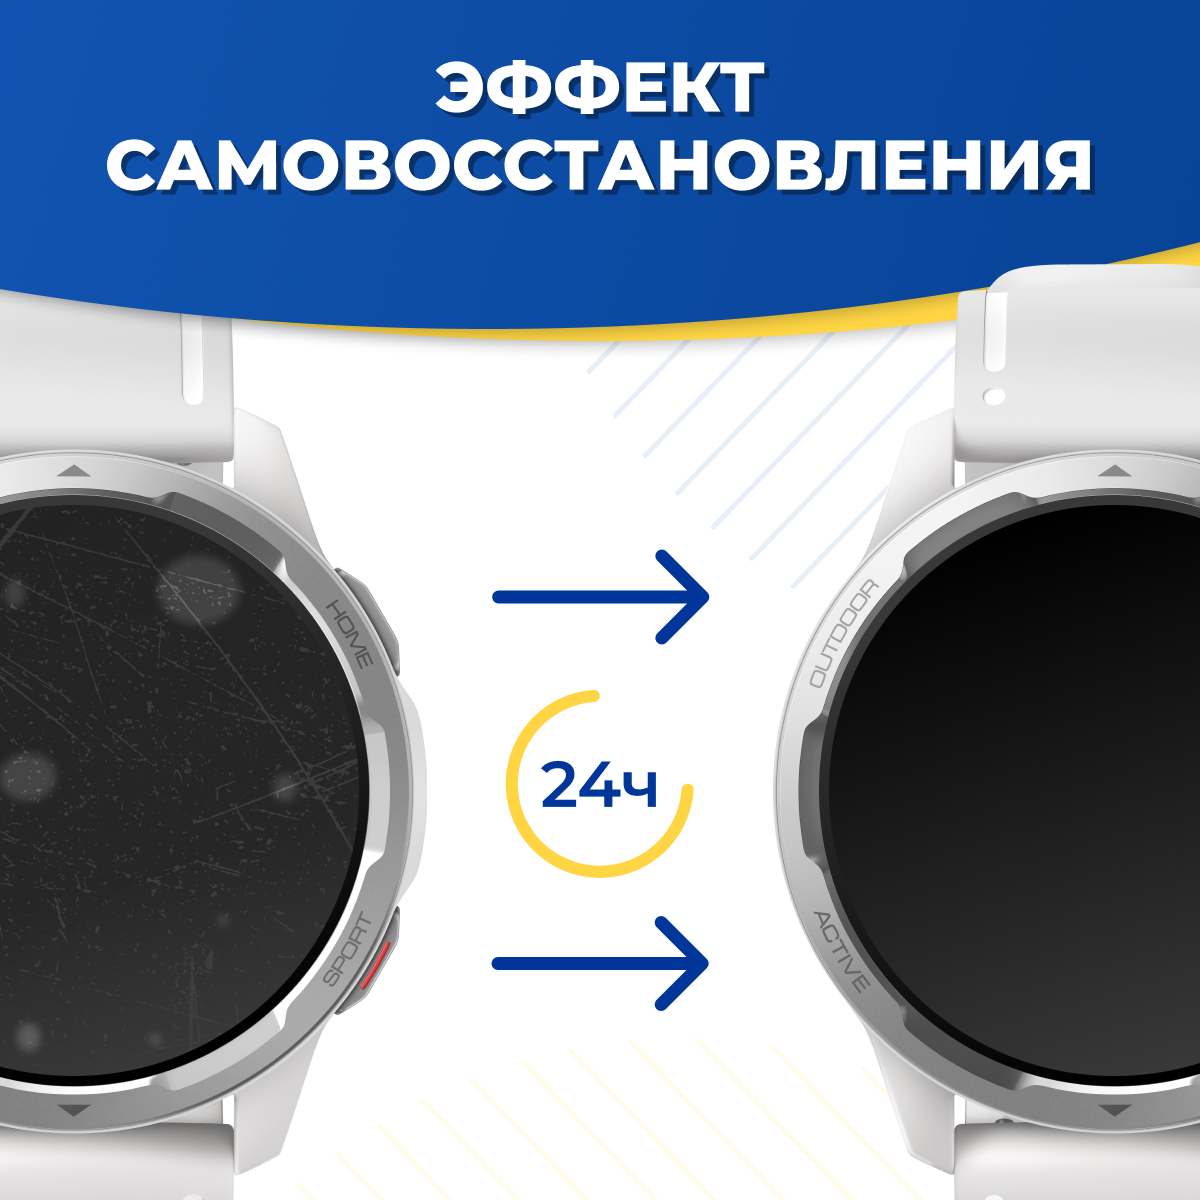 Гидрогелевая защитная пленка на смарт часы Huawei Watch GT 2 Pro / Самовосстанавливающаяся бронепленка для умных часов Хуавей Вотч ГТ 2 Про